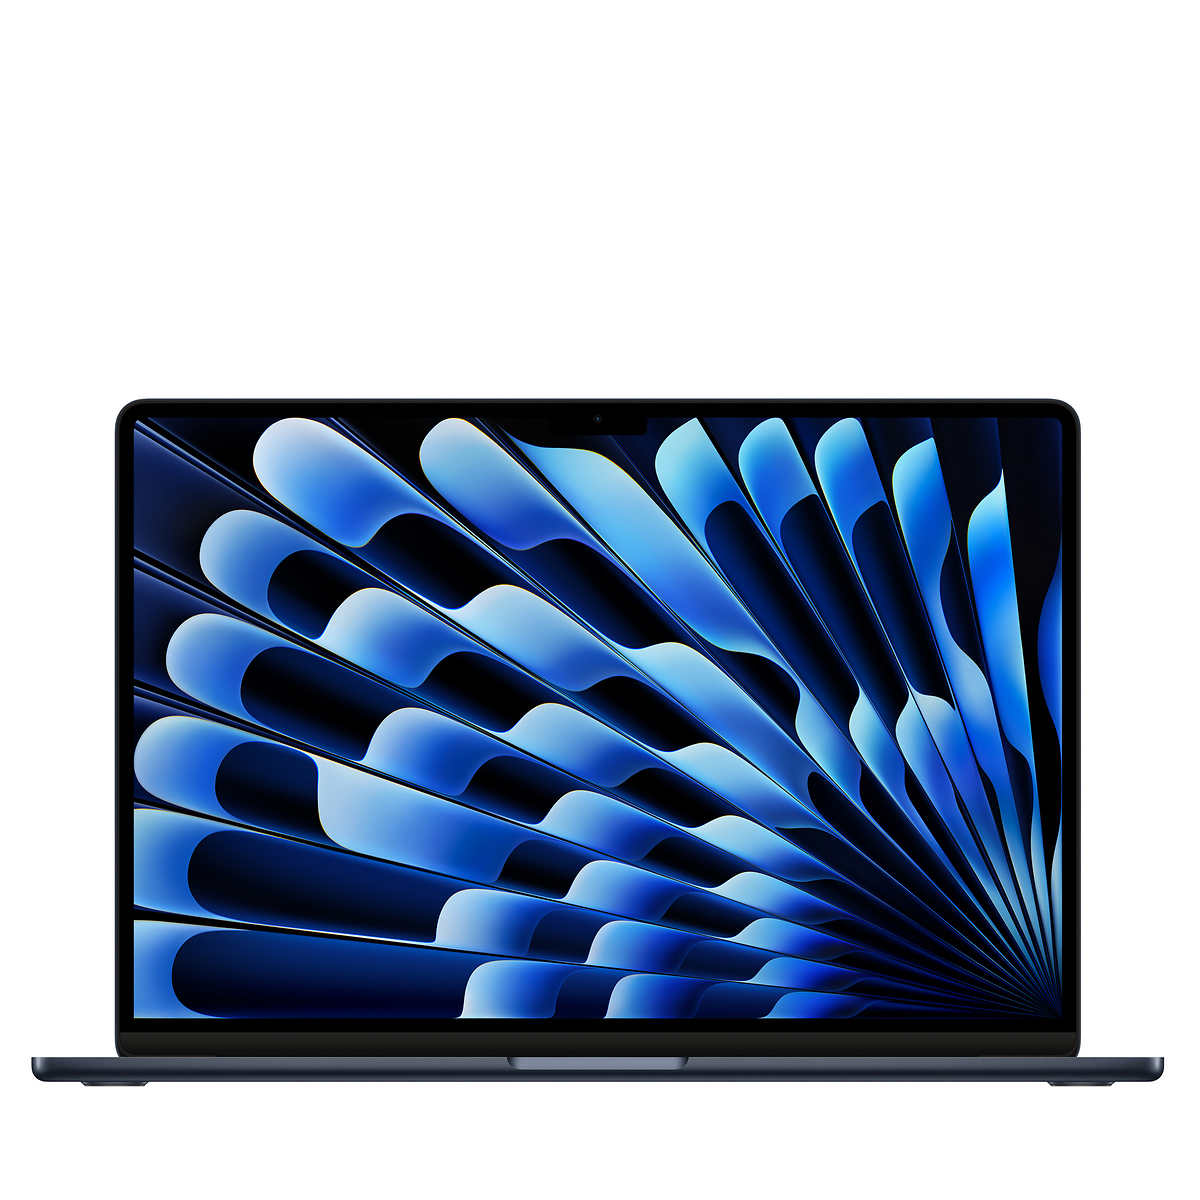 MacBook Air laptop (15-inch) - Apple M3 chip, 8-core CPU, 10-core GPU, 16GB memory, 512GB SSD storage